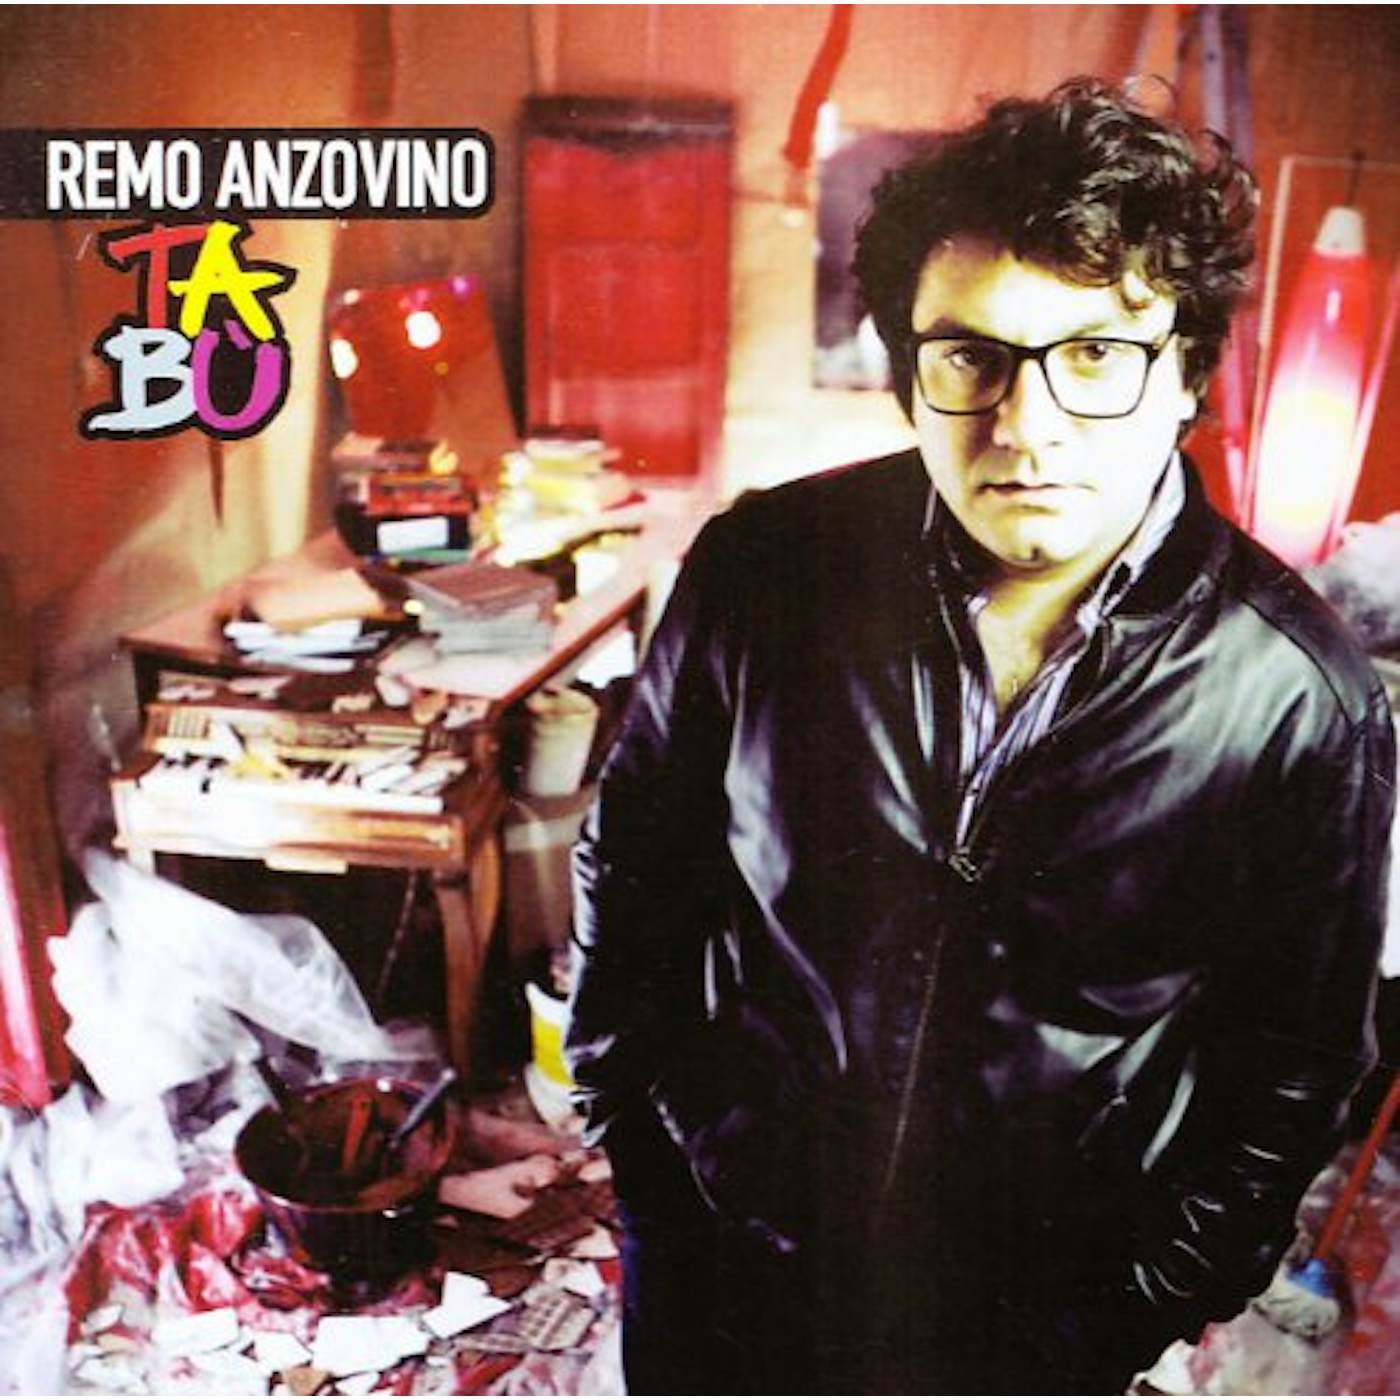 Remo Anzovino TABU' CD